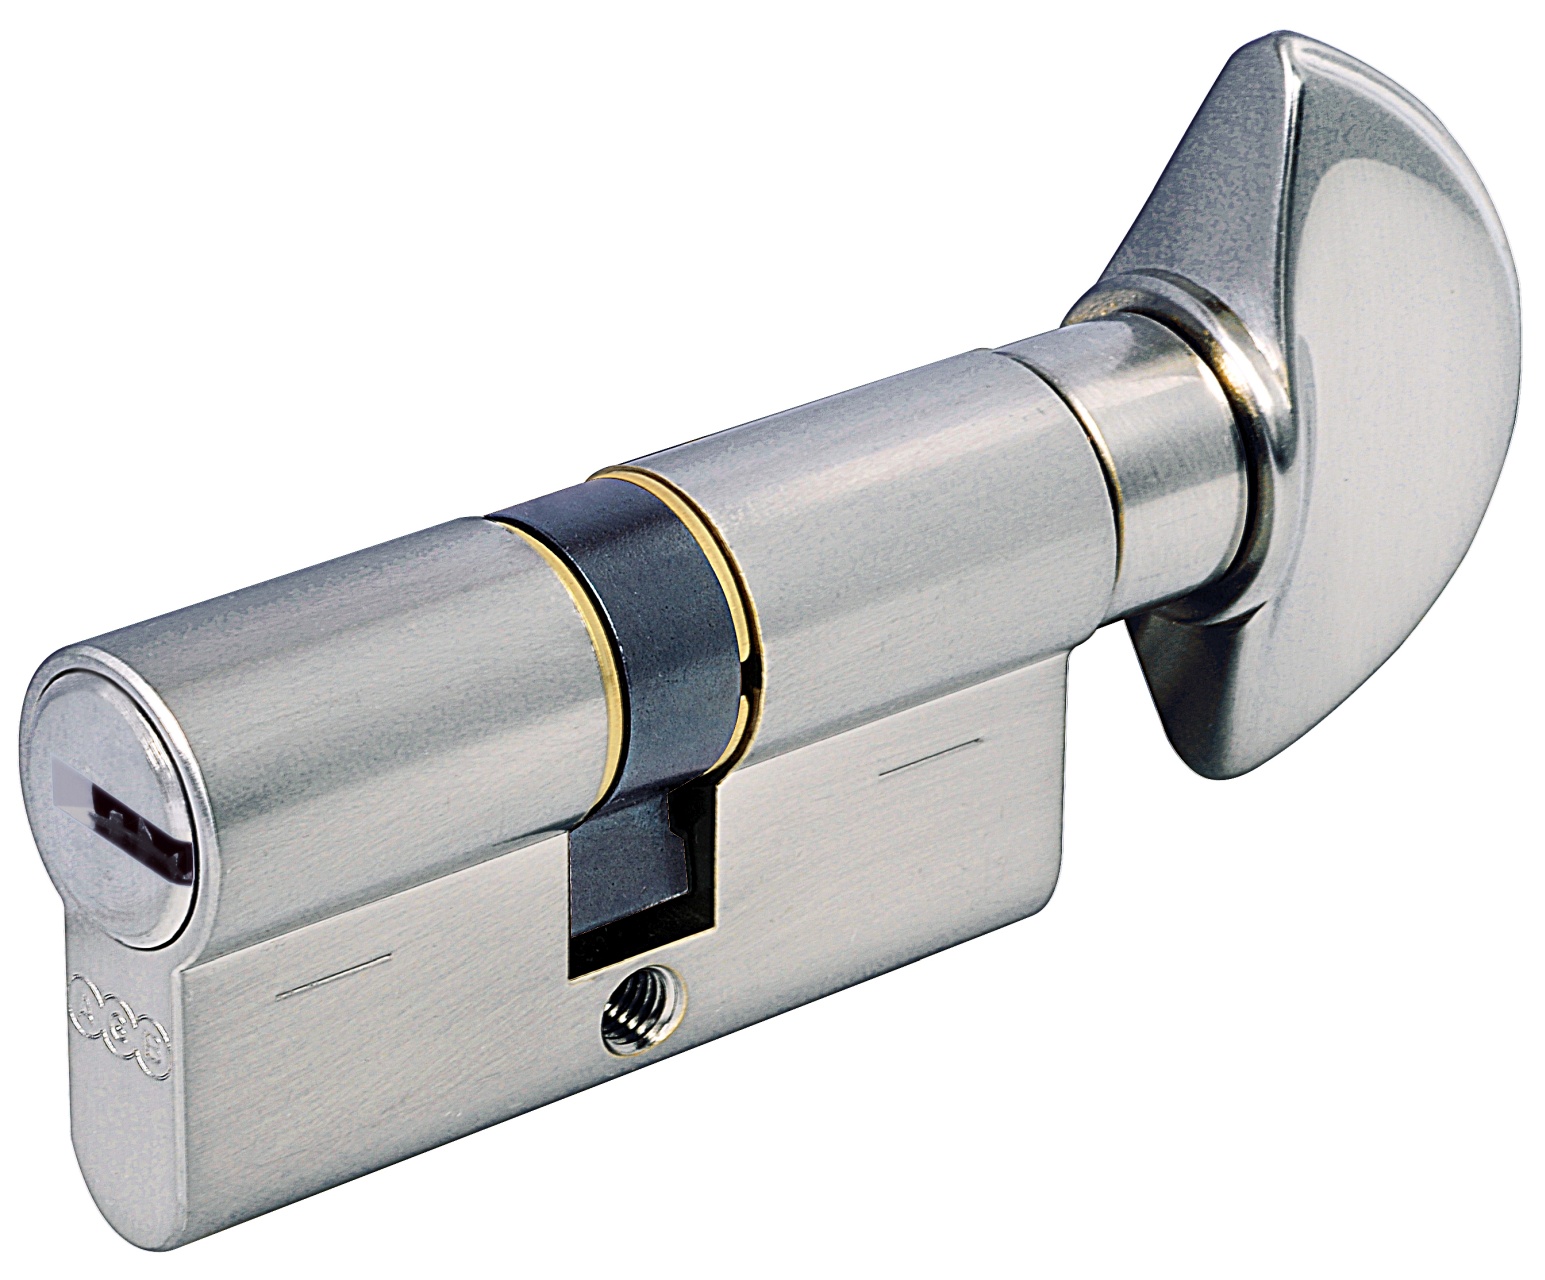 AGB -  Cilindro SCUDO 5000 PS frizionato anti bamping con chiave e pomolo ka - a chiave uguale - col. NICHELATO OPACO - lunghezza 80 - misura P-35-10-45